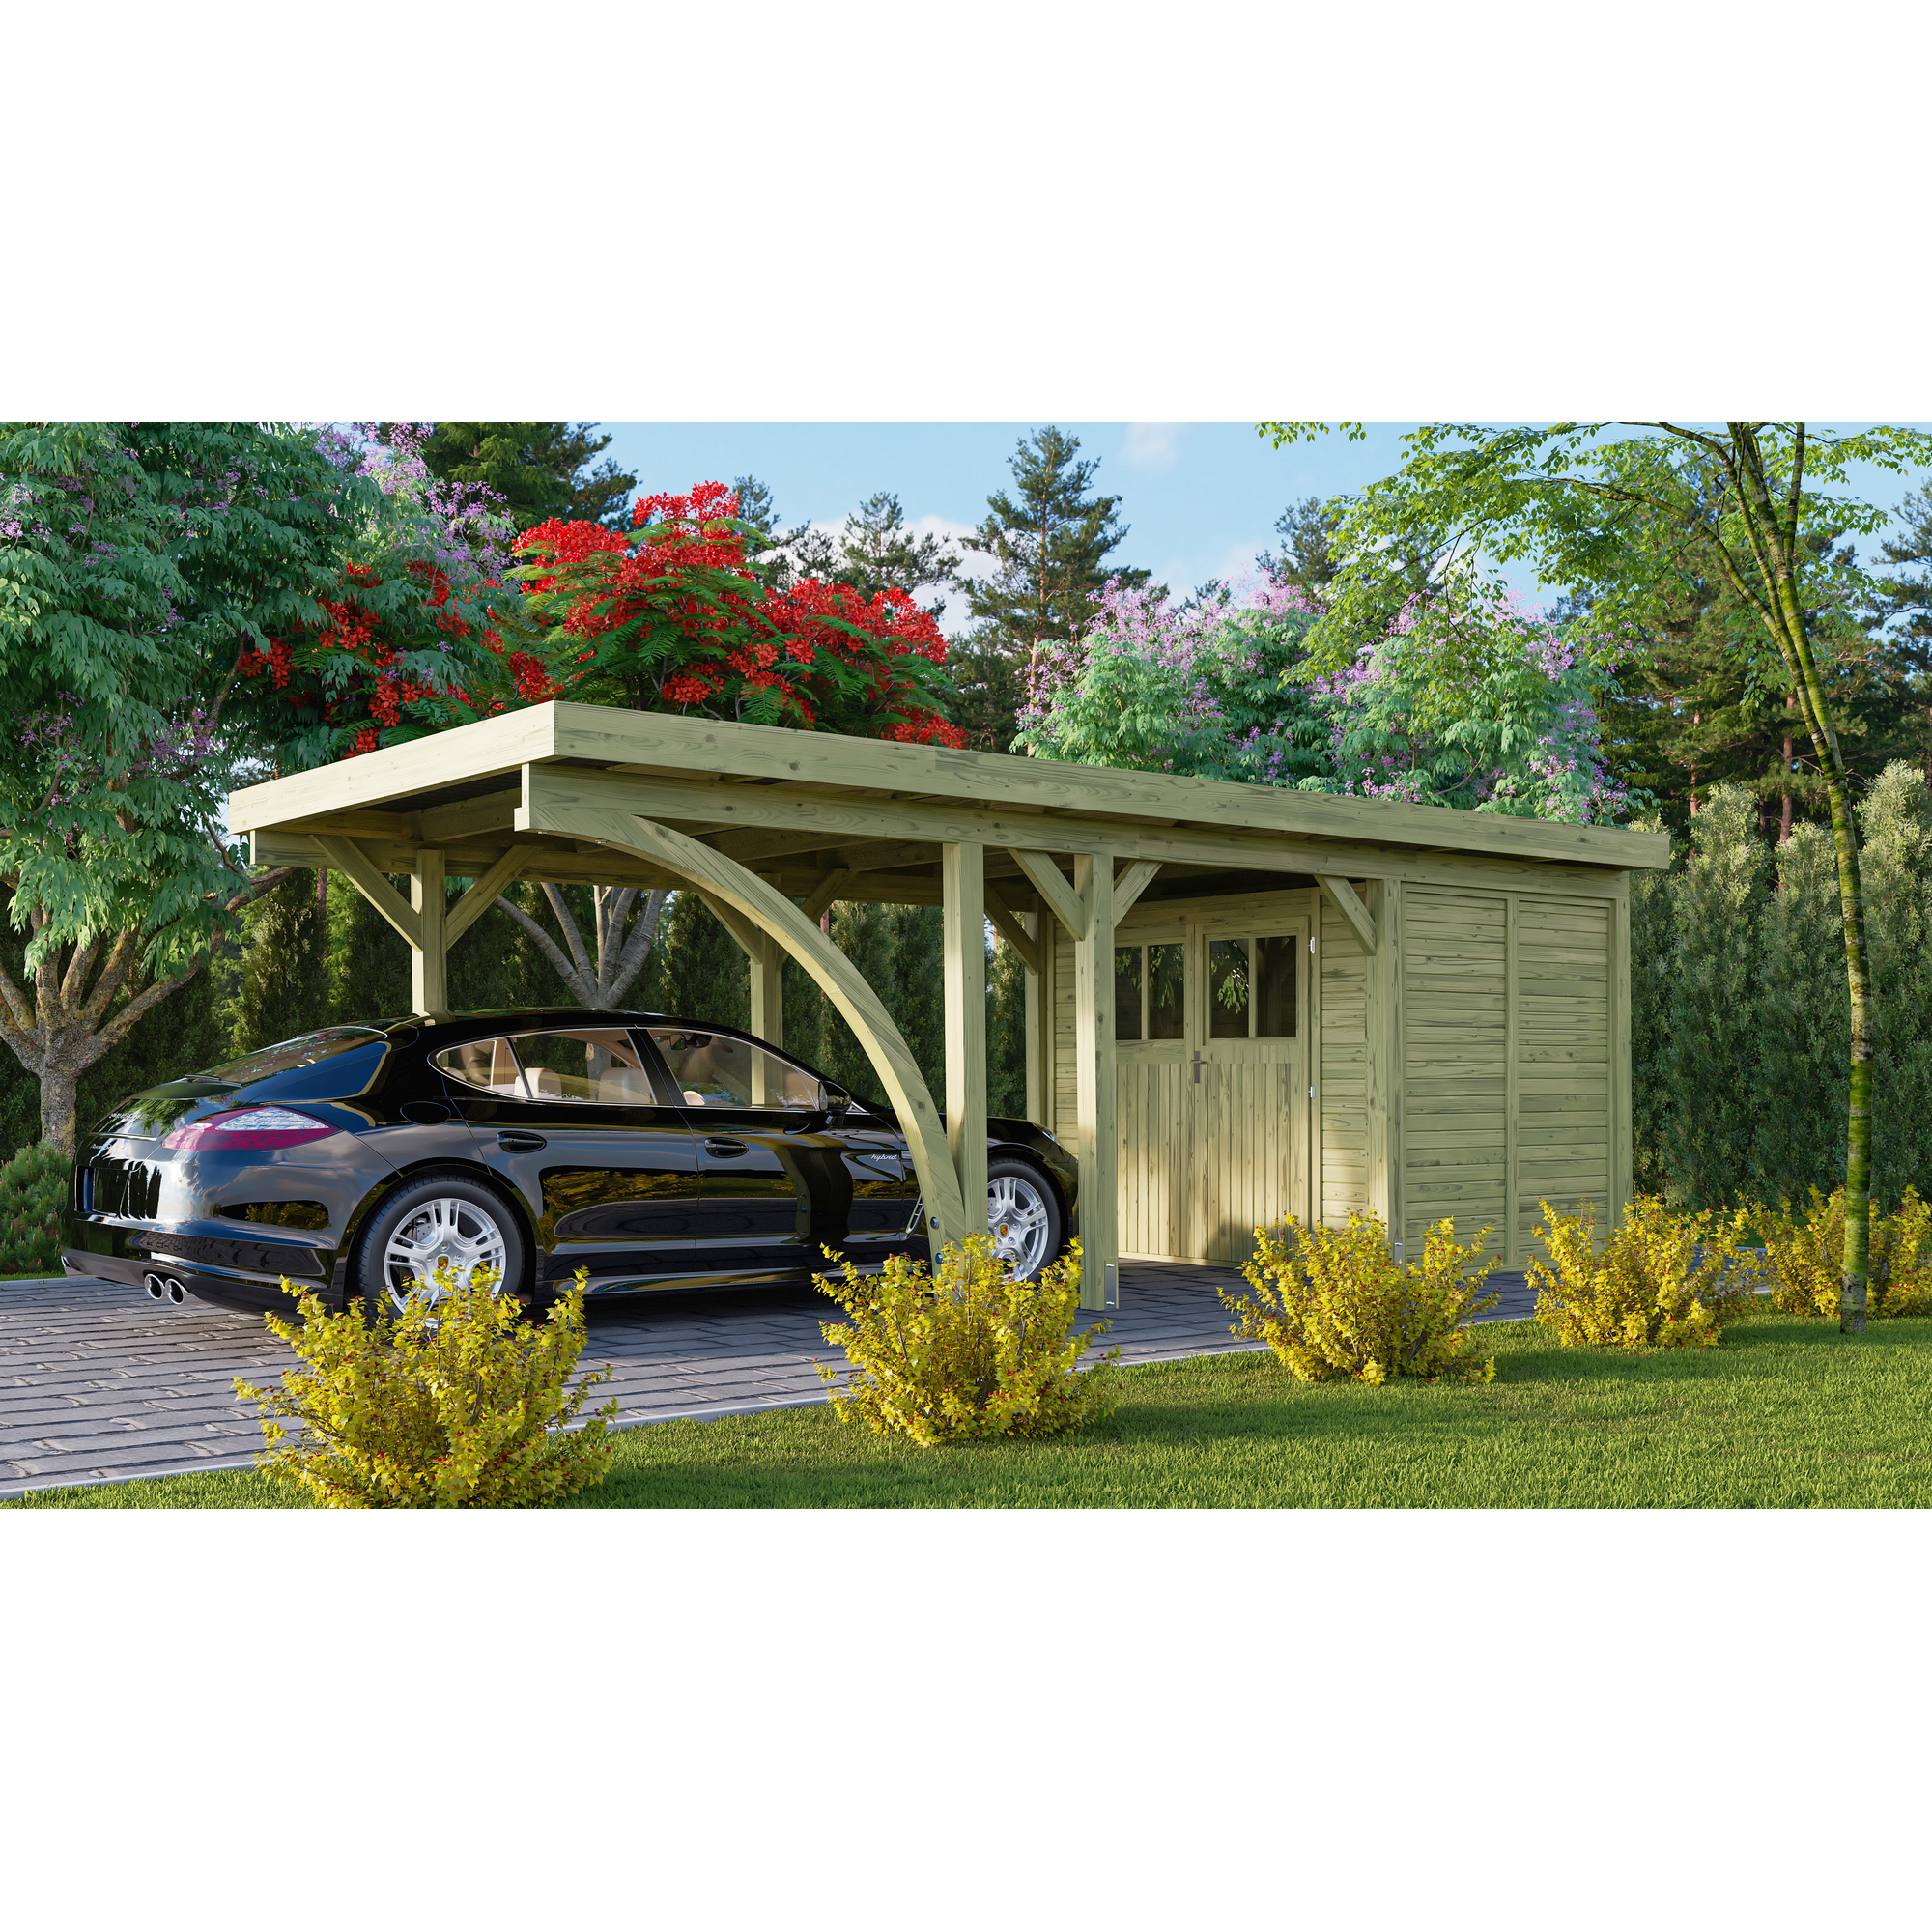 Einzelcarport 'Carlos 2' Kiefer PVC-Dach mit einem Einfahrtsbogen 670 x 318 x 234 cm + product picture